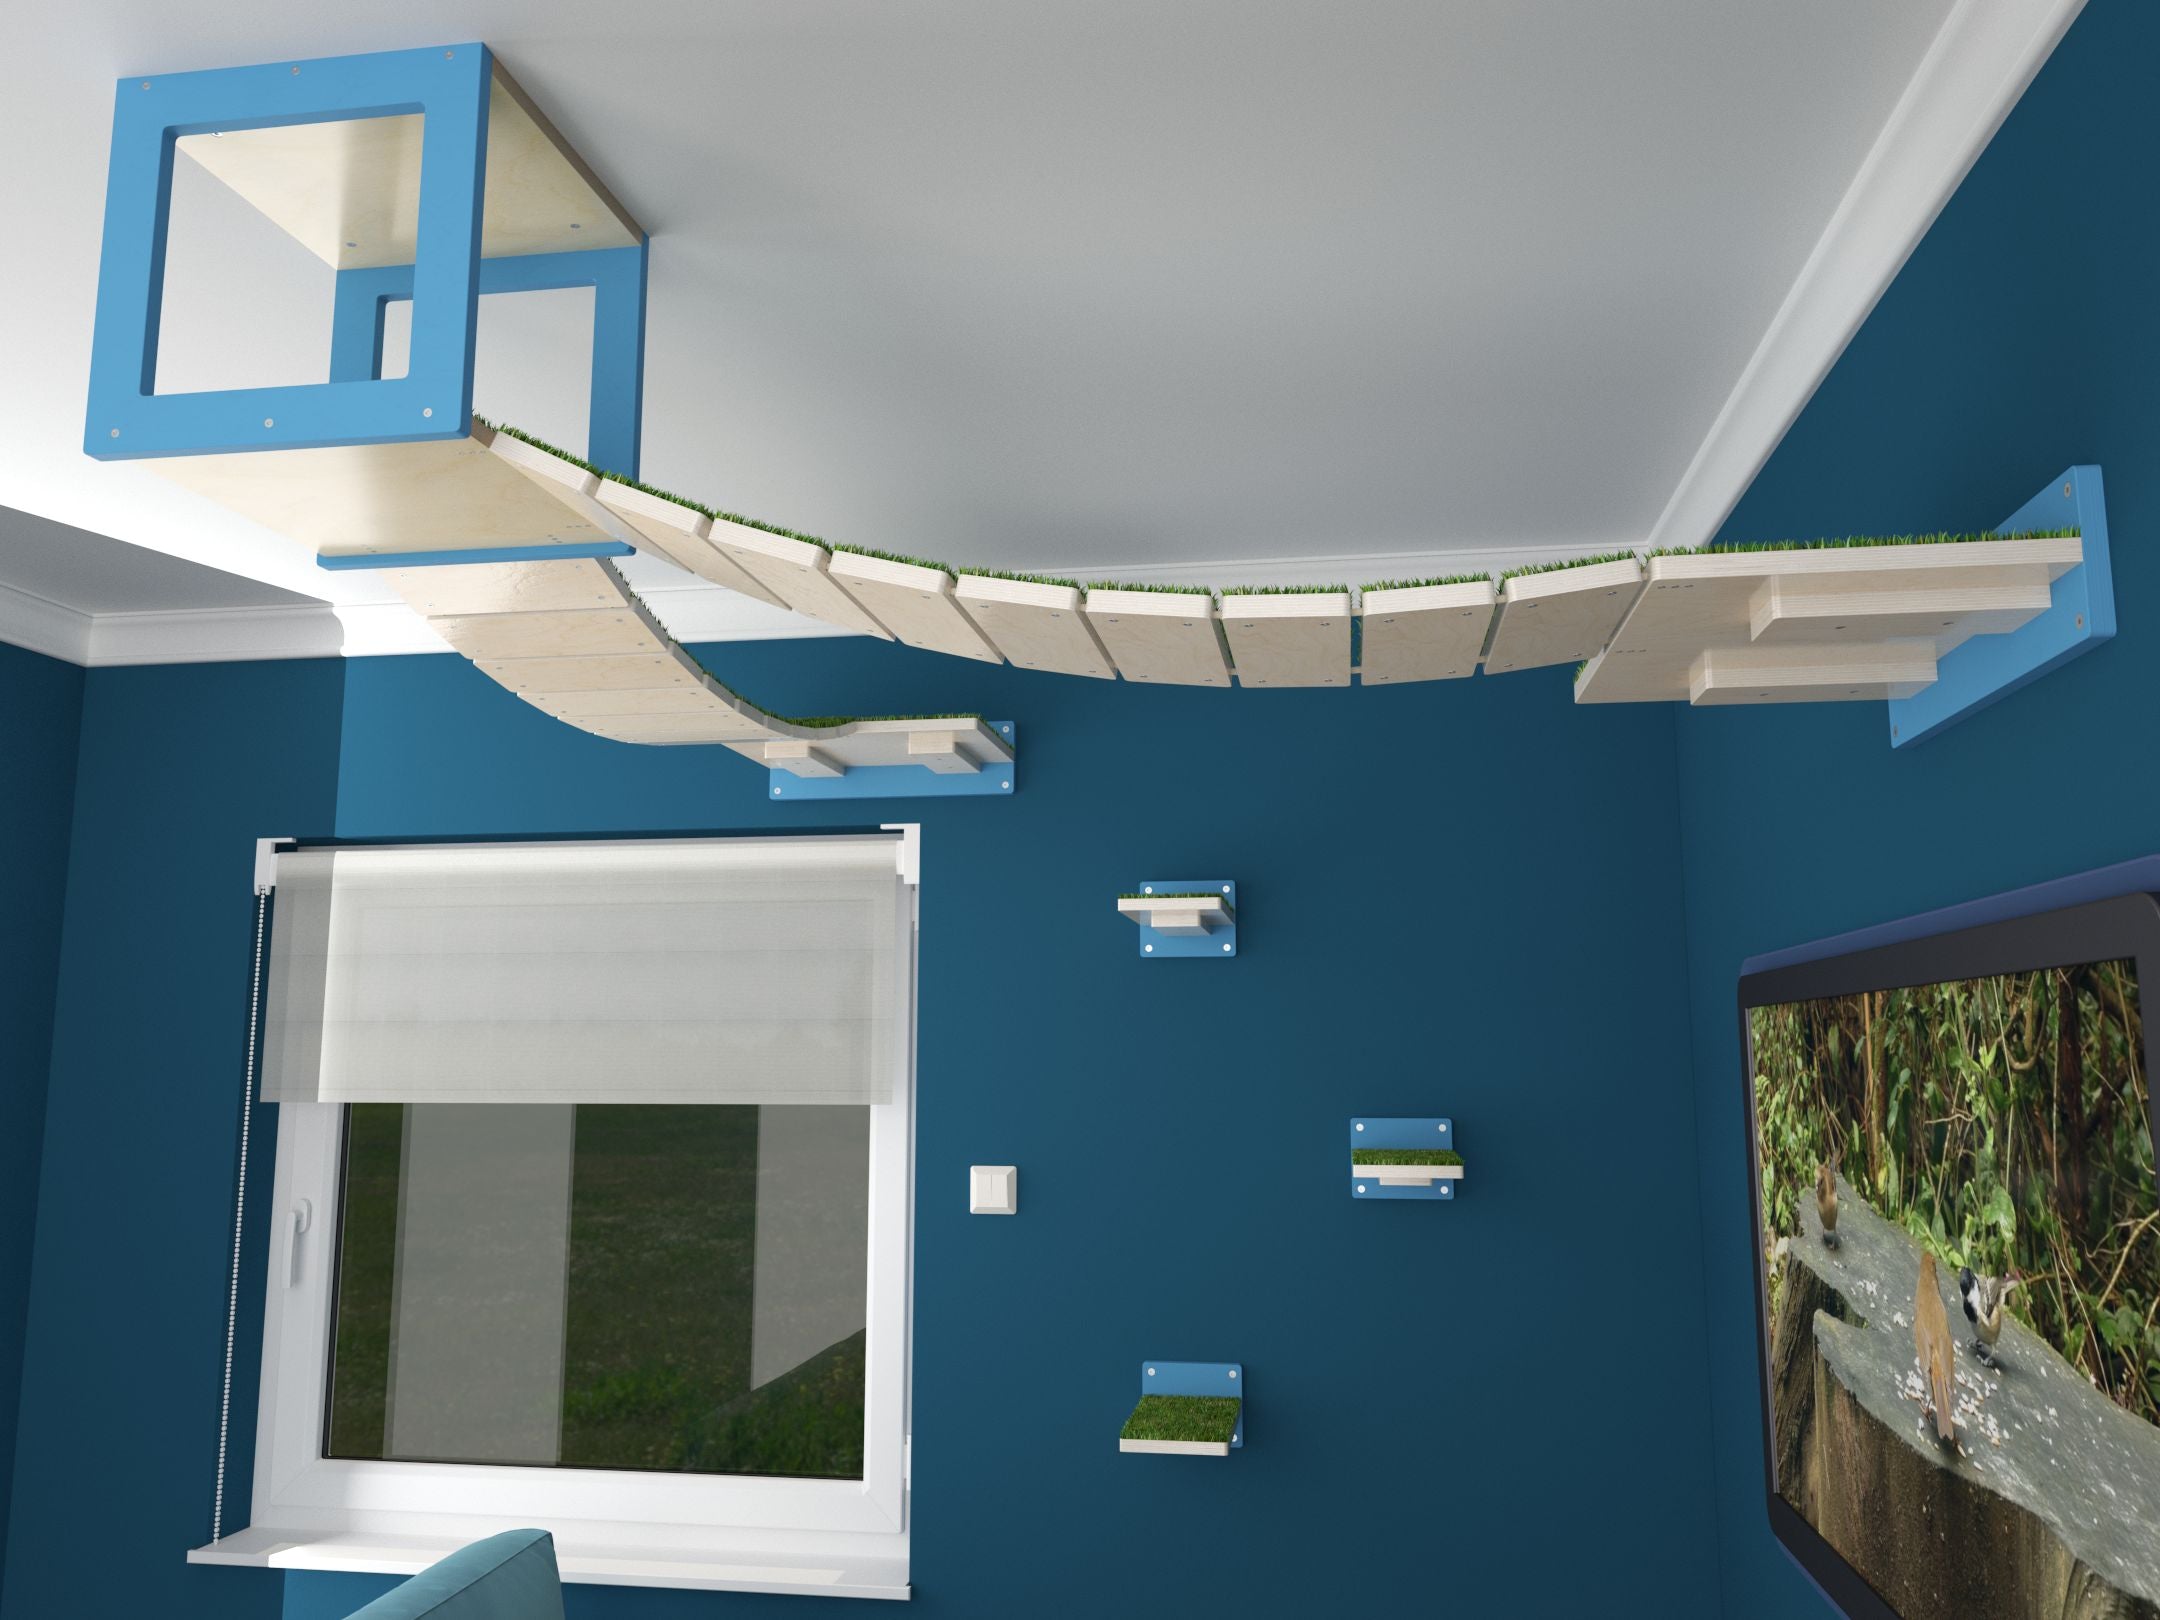 Cat Ceiling Shelf Bridge Bundle - Top Double Grass Bridge Bundle - Scratchy Things Premium Pet Furniture